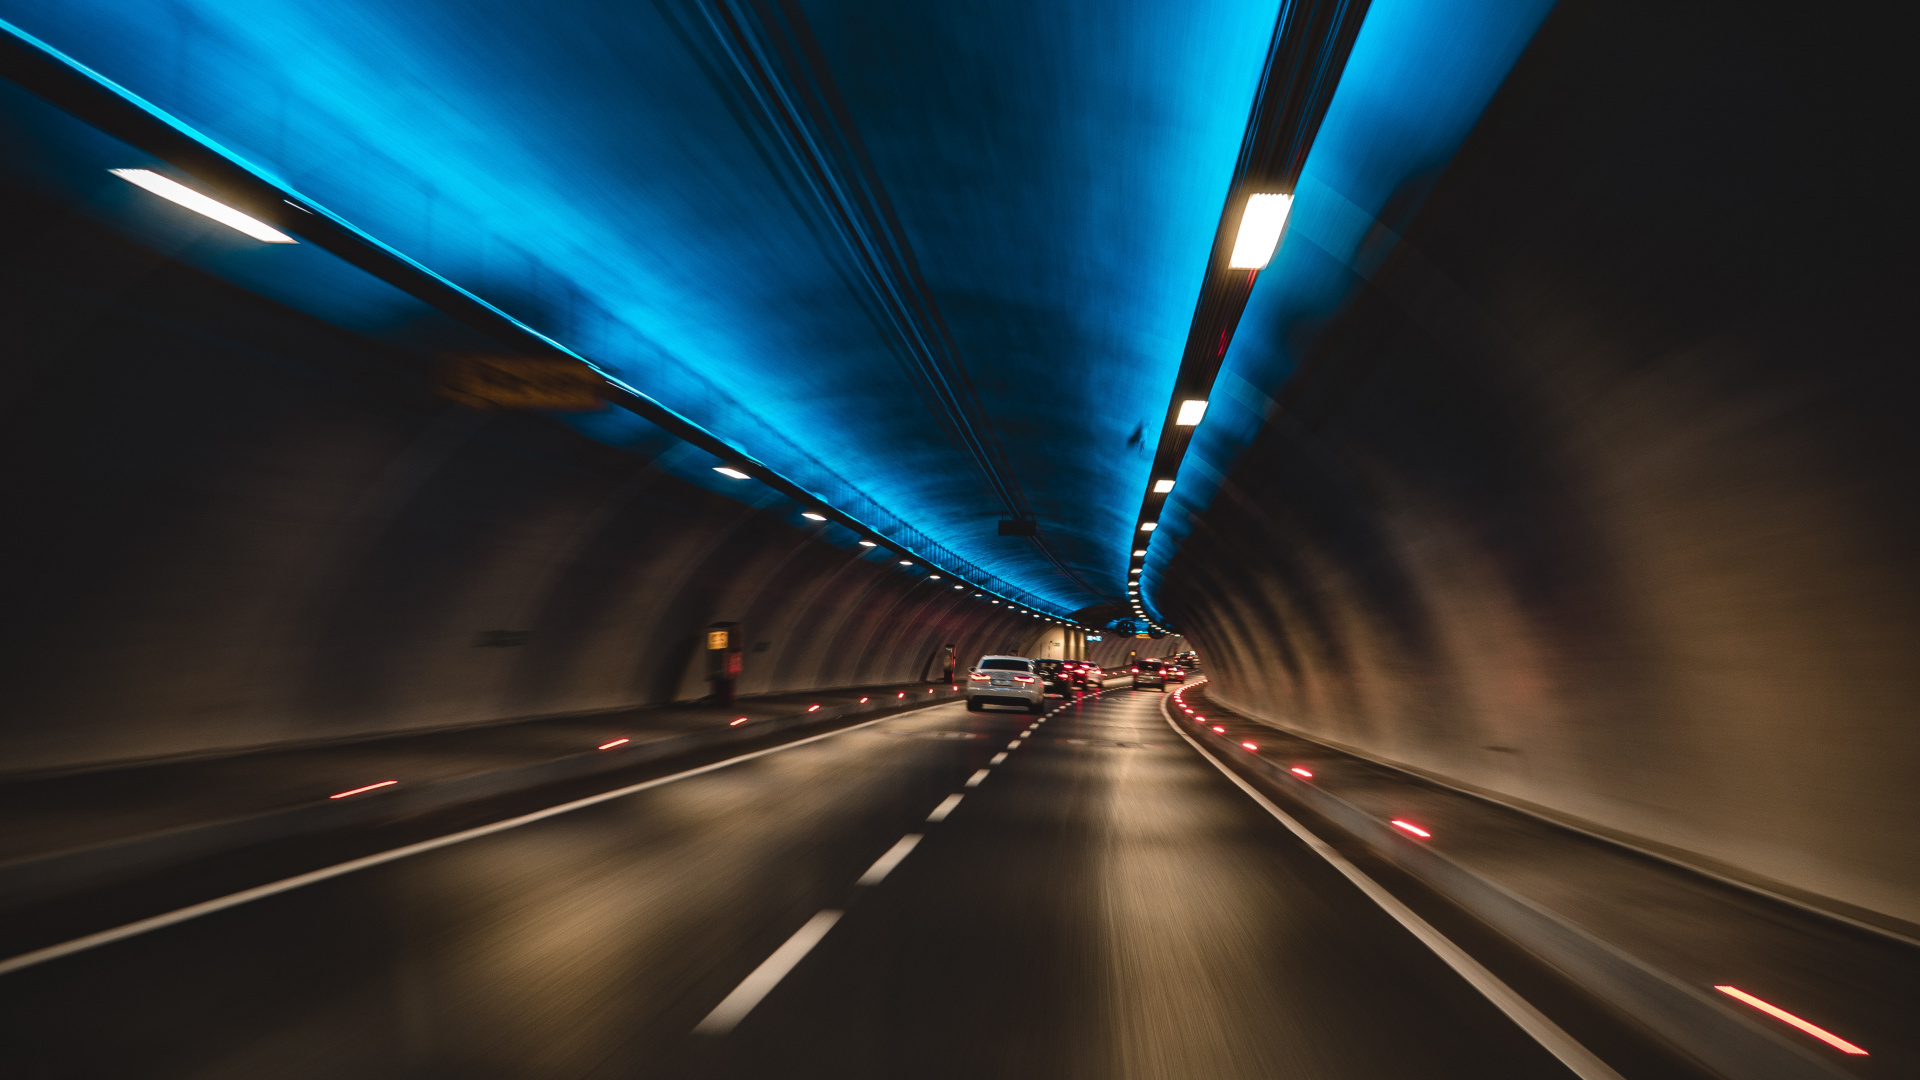 隧道, 高速公路, 车道, 光, 基础设施 壁纸 1920x1080 允许